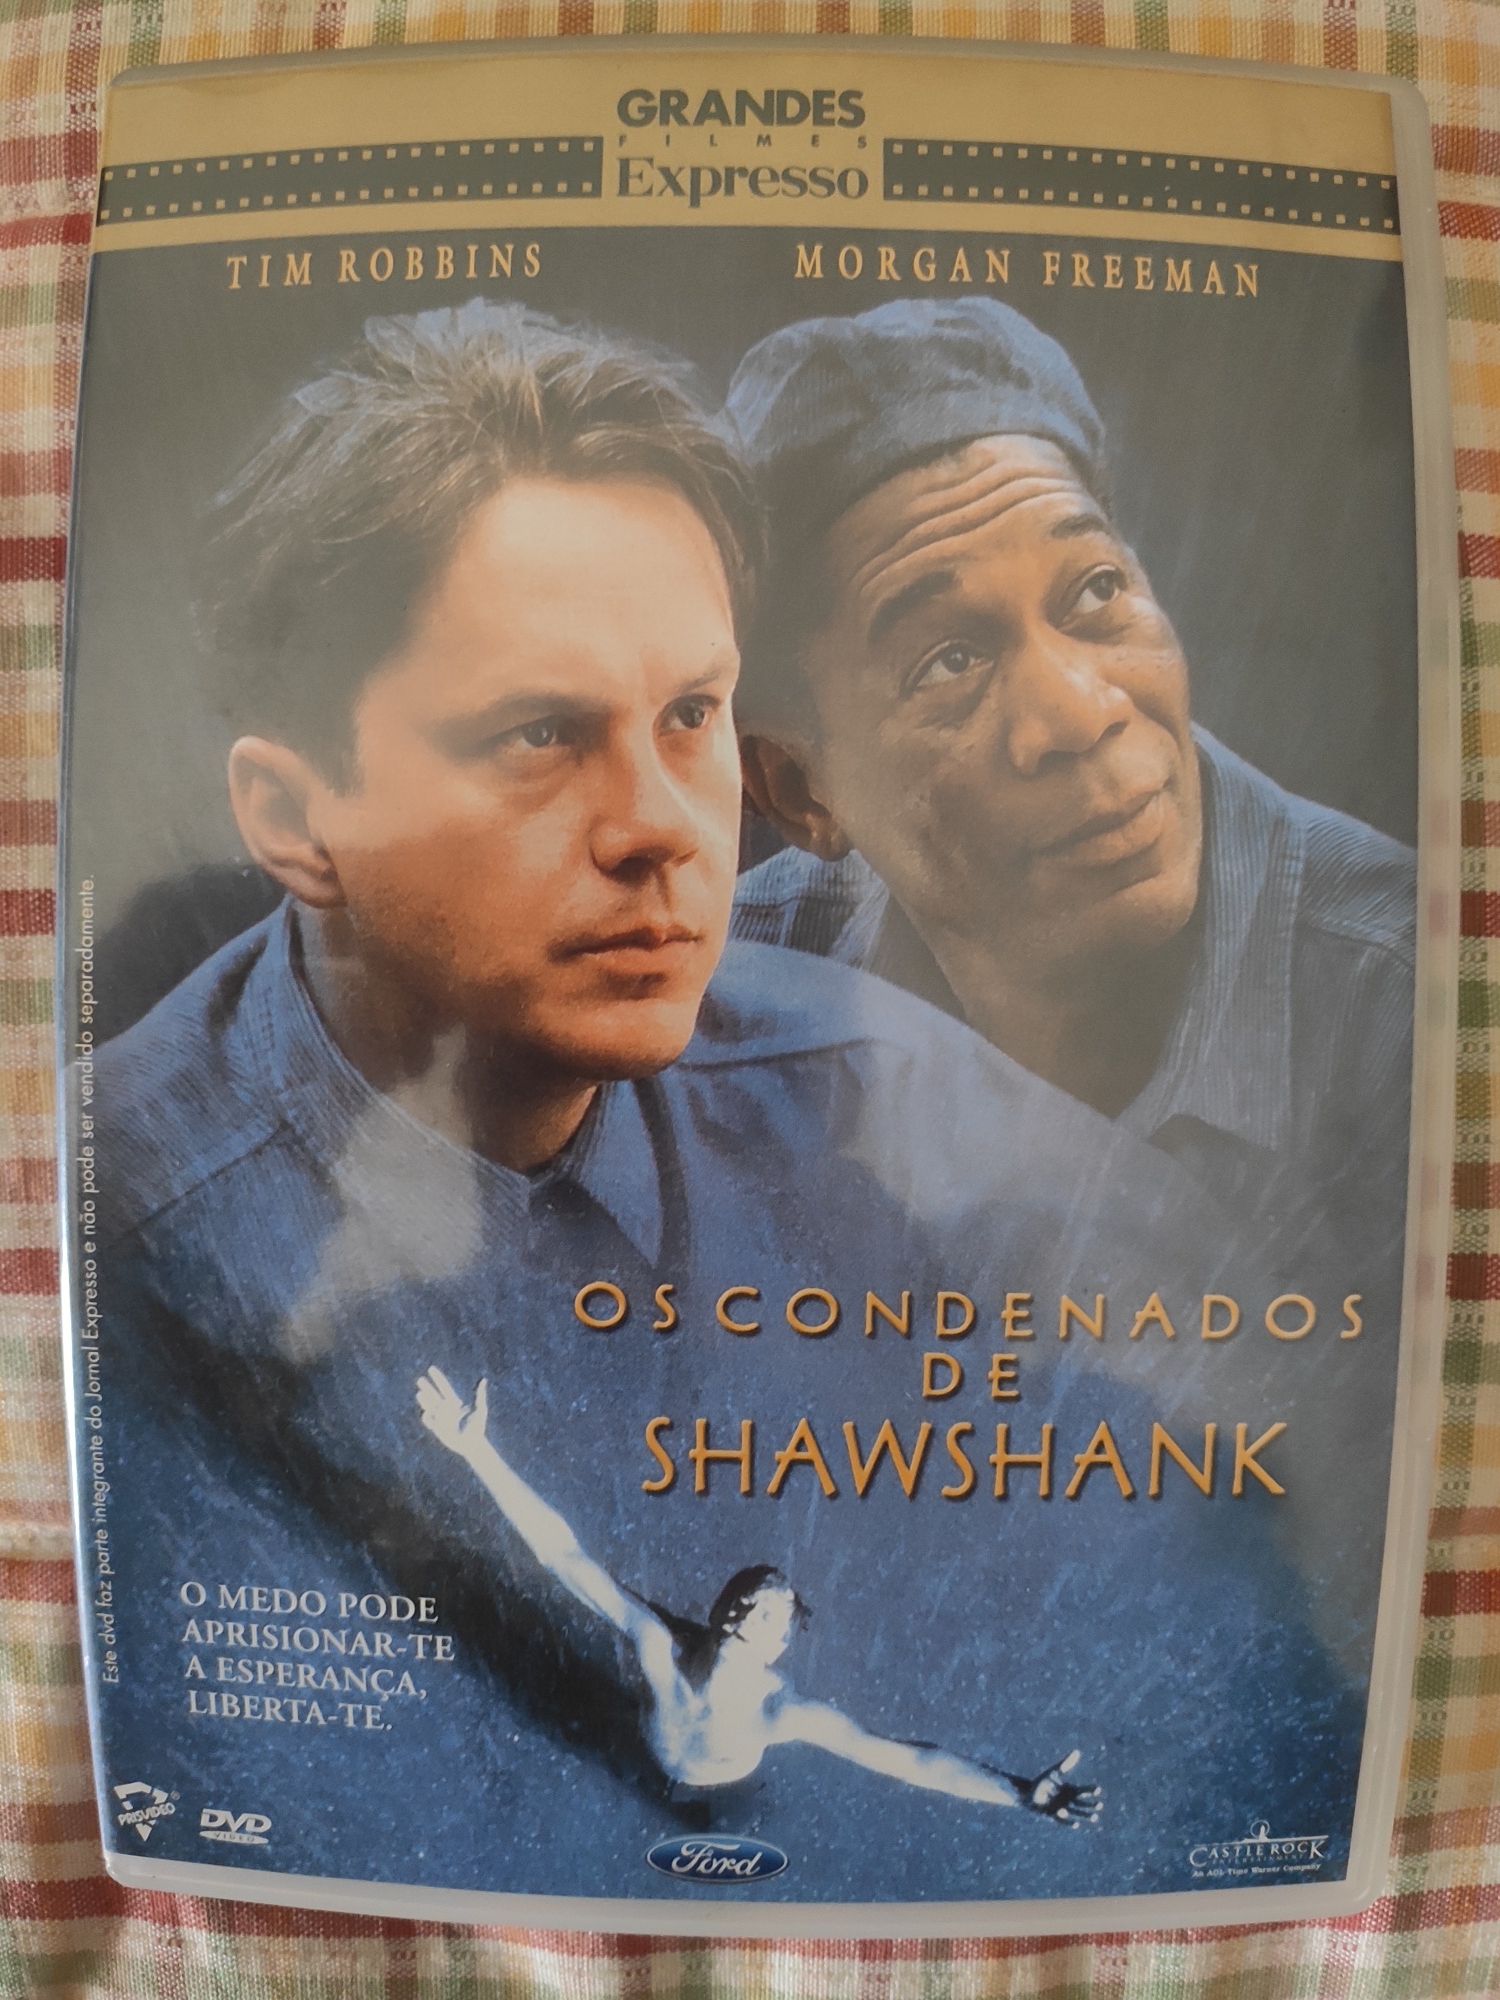 DVD "Os Condenados de Shawshank"